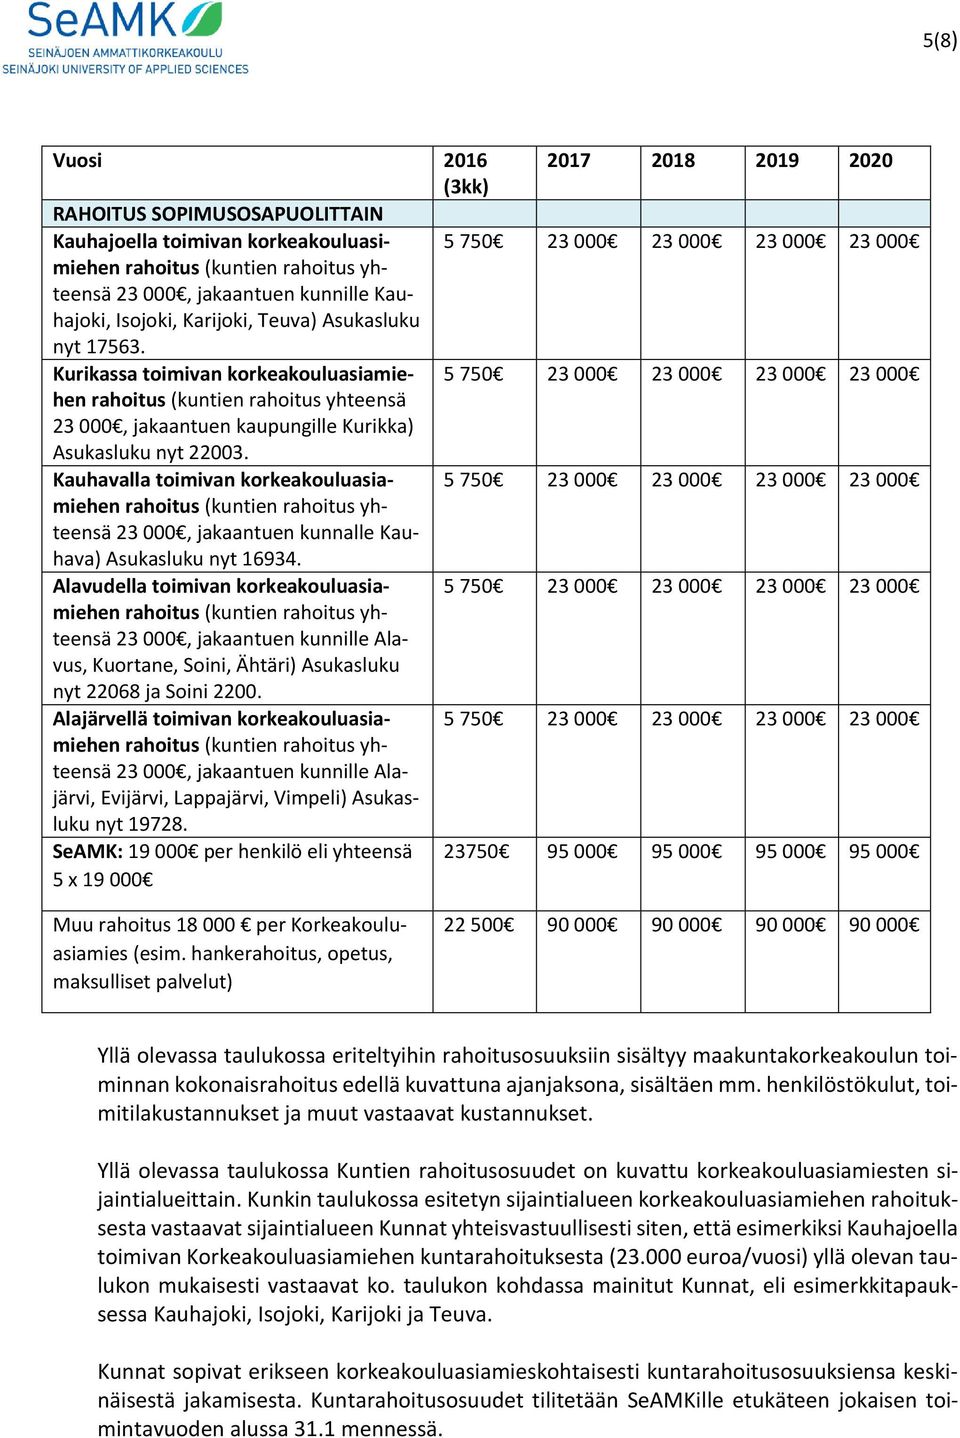 Kauhavalla toimivan korkeakouluasiamiehen rahoitus (kuntien rahoitus yh- teensä 23 000, jakaantuen kunnalle Kauhava) Asukasluku nyt 16934.